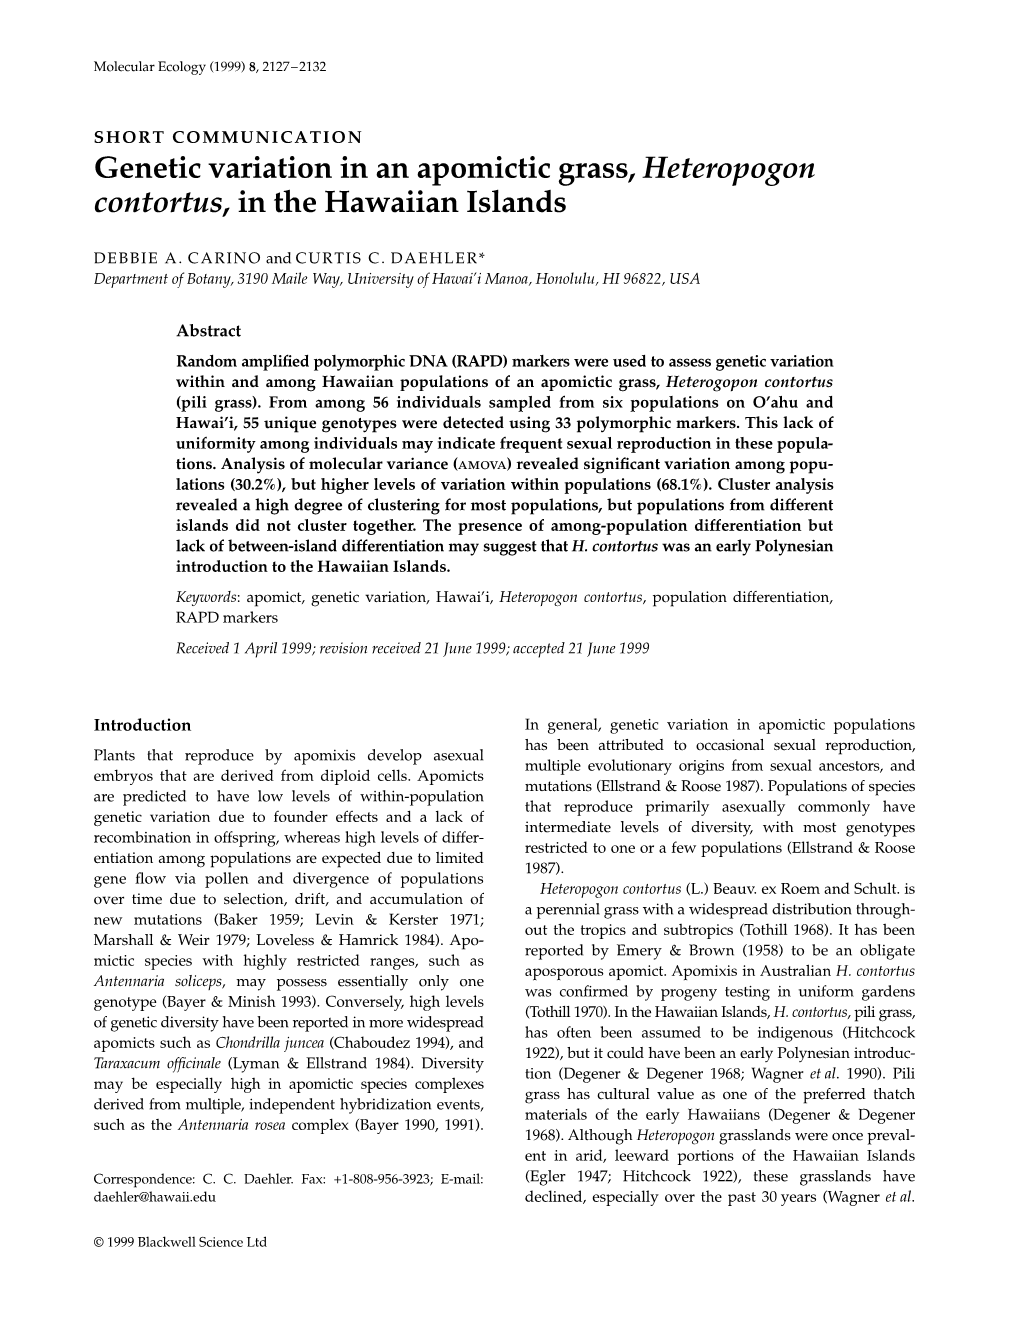 Genetic Variation in an Apomictic Grass, Heteropogon Contortus, in the Hawaiian Islands